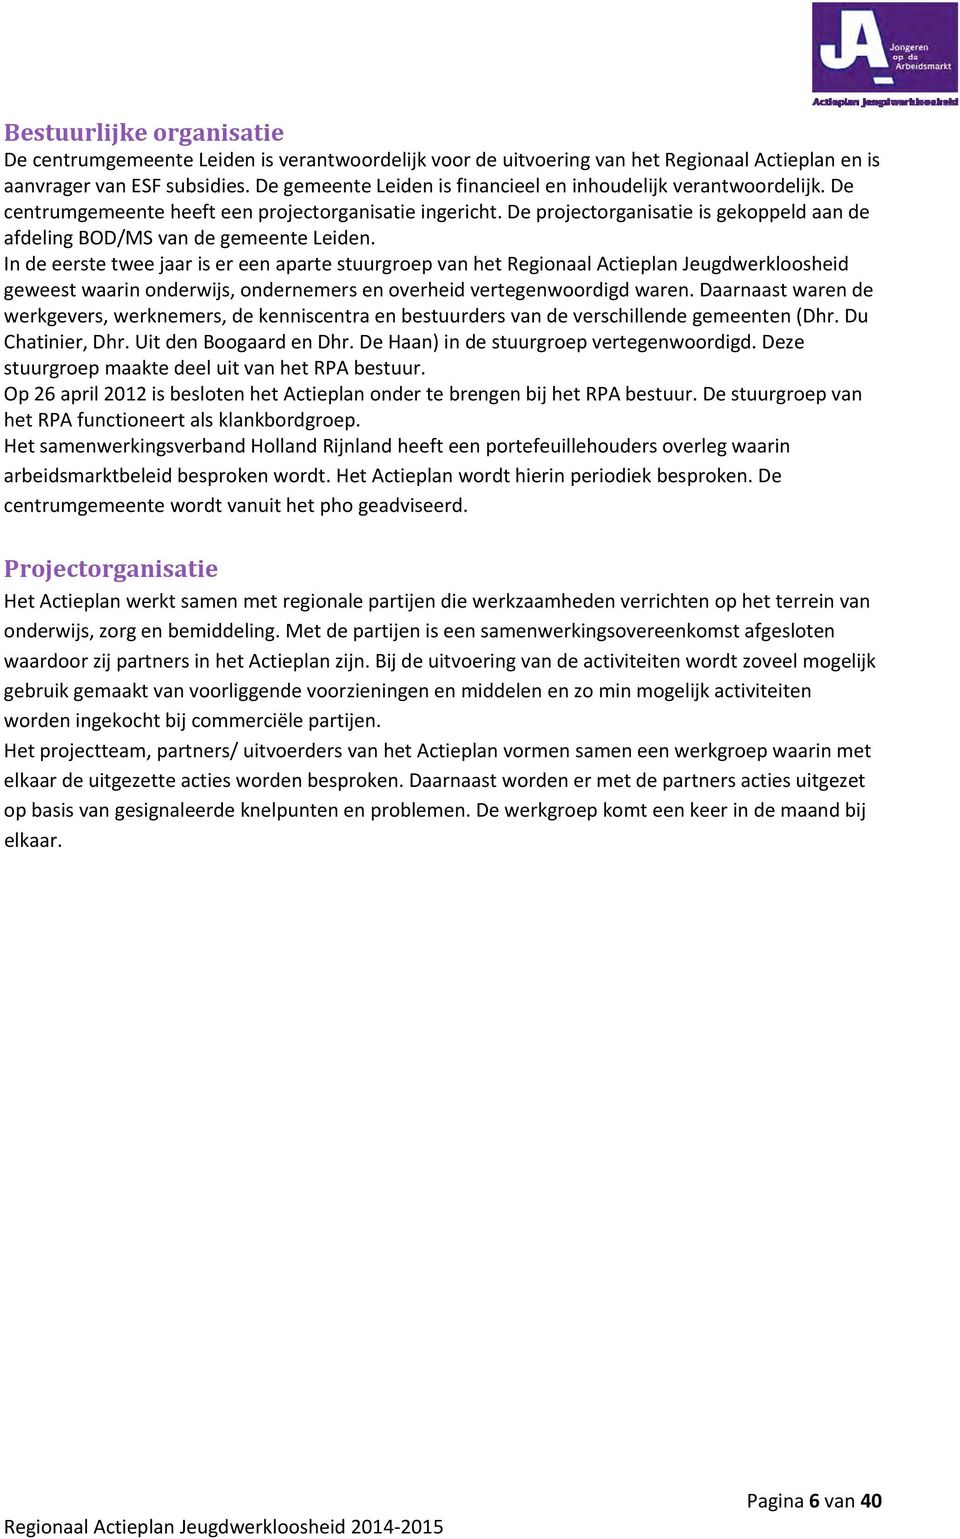 De projectorganisatie is gekoppeld aan de afdeling BOD/MS van de gemeente Leiden.